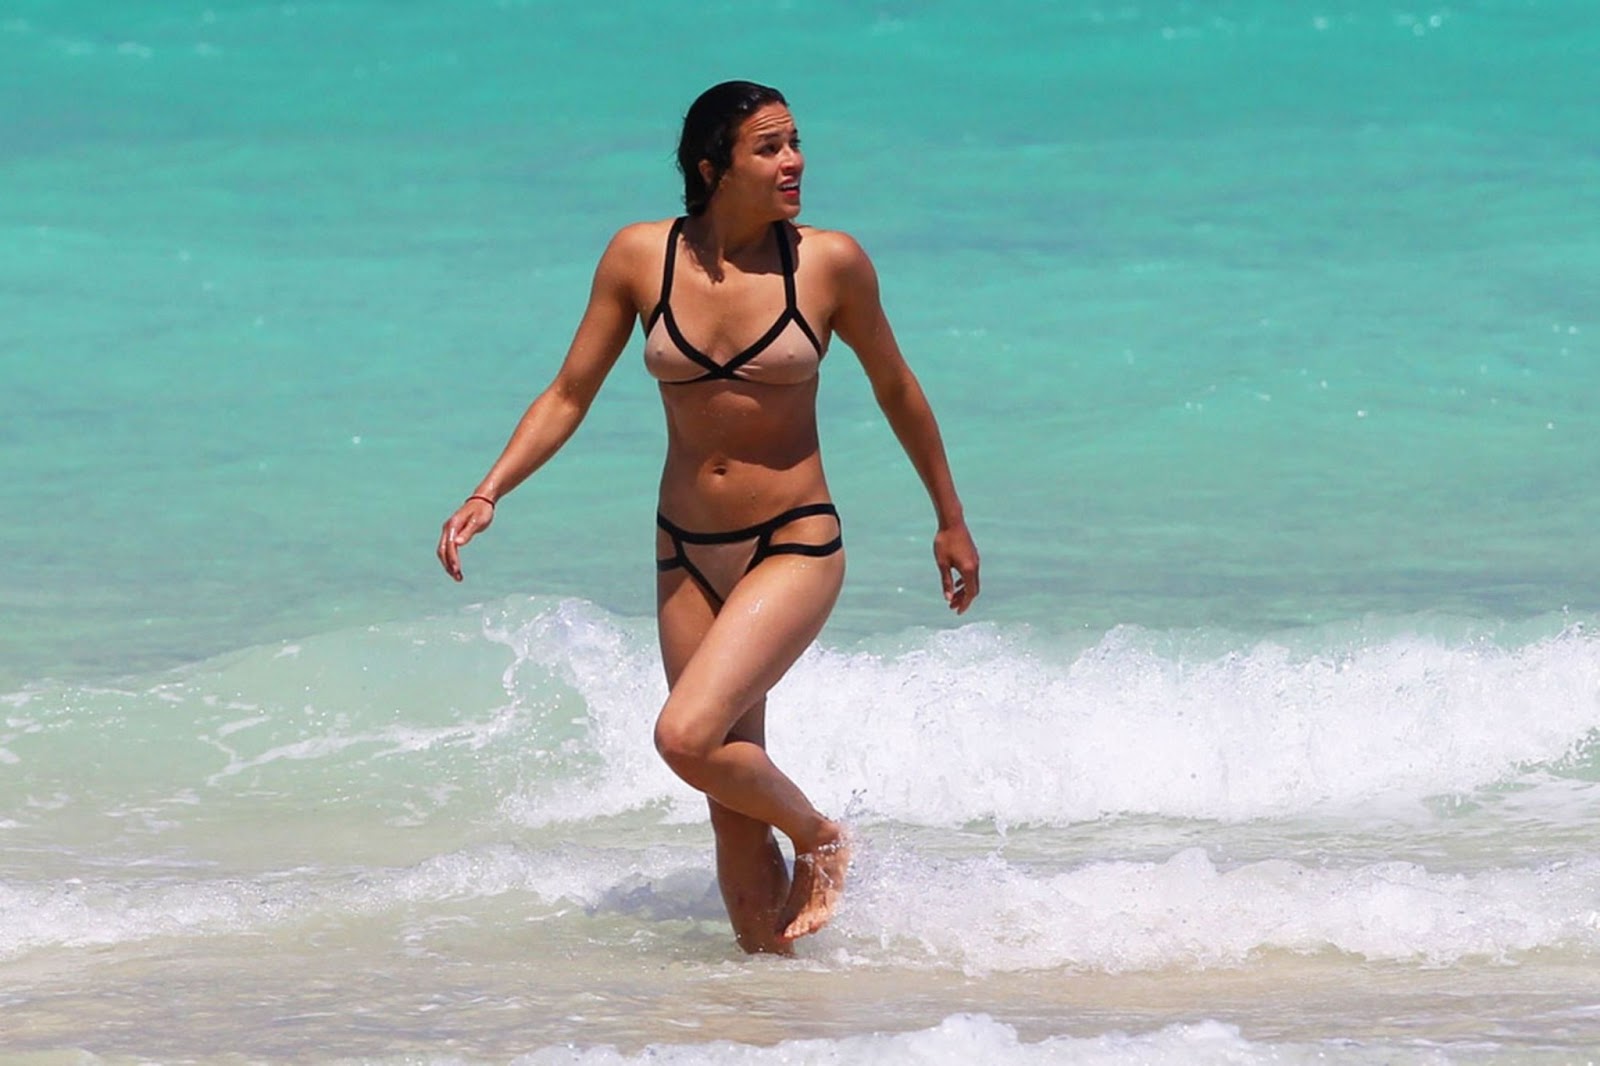 Fast and Furious Michelle Rodriguez’s Oops Nips in Beach Bikini Pics